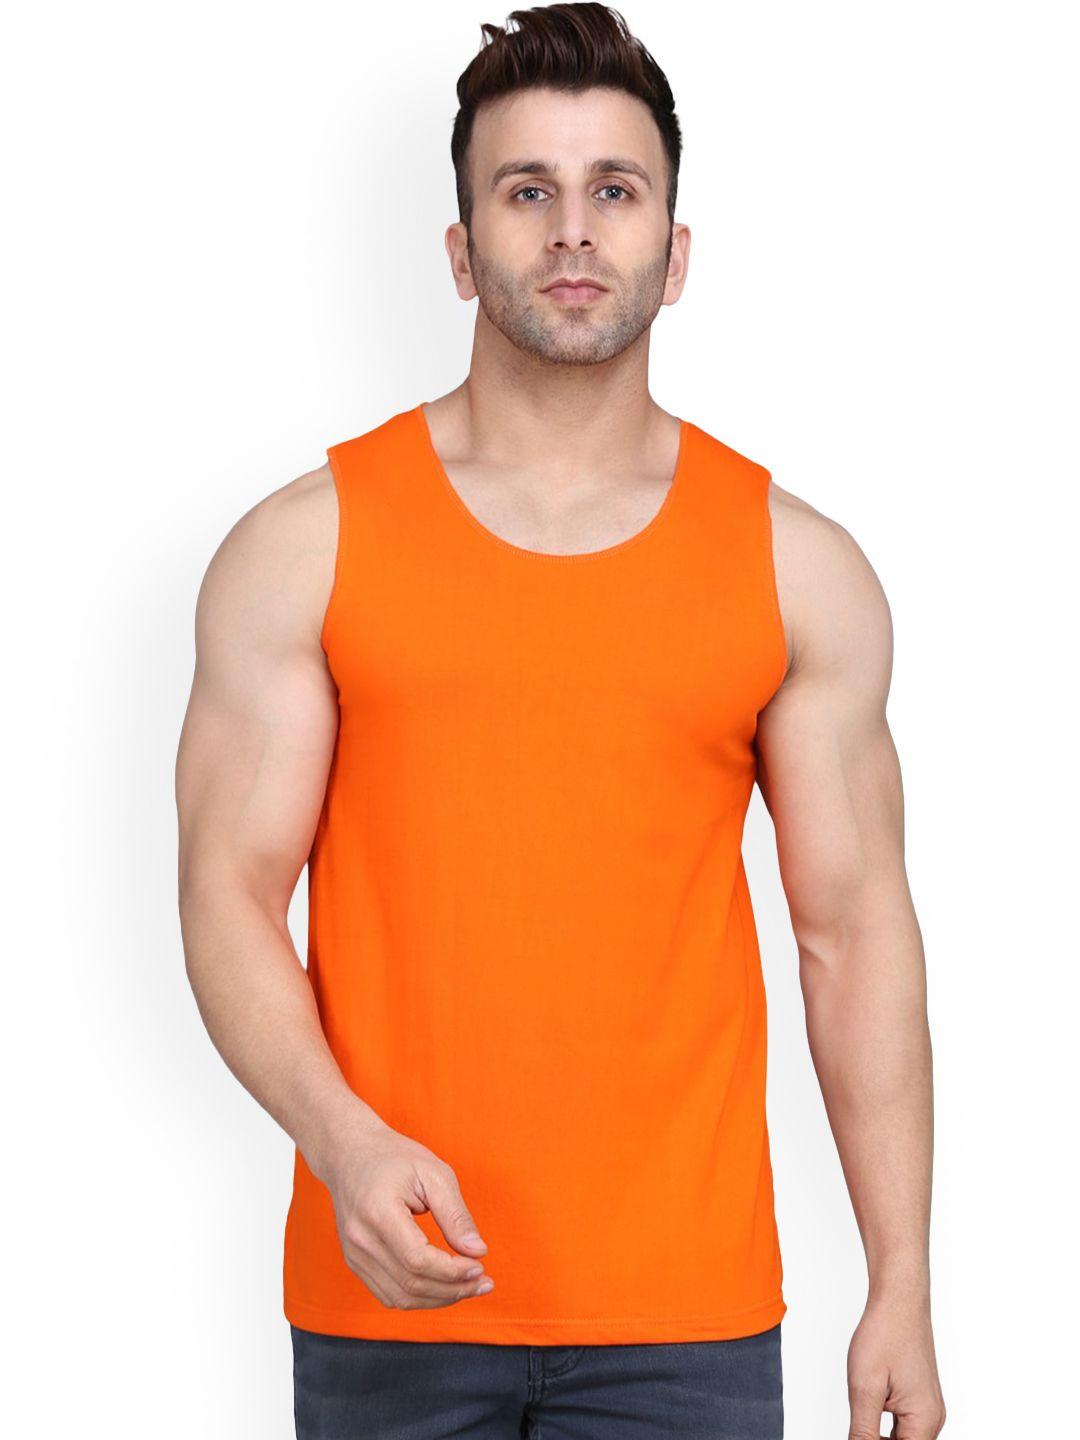 slowloris scoop neck gym innerwear vestssl26 plain orange